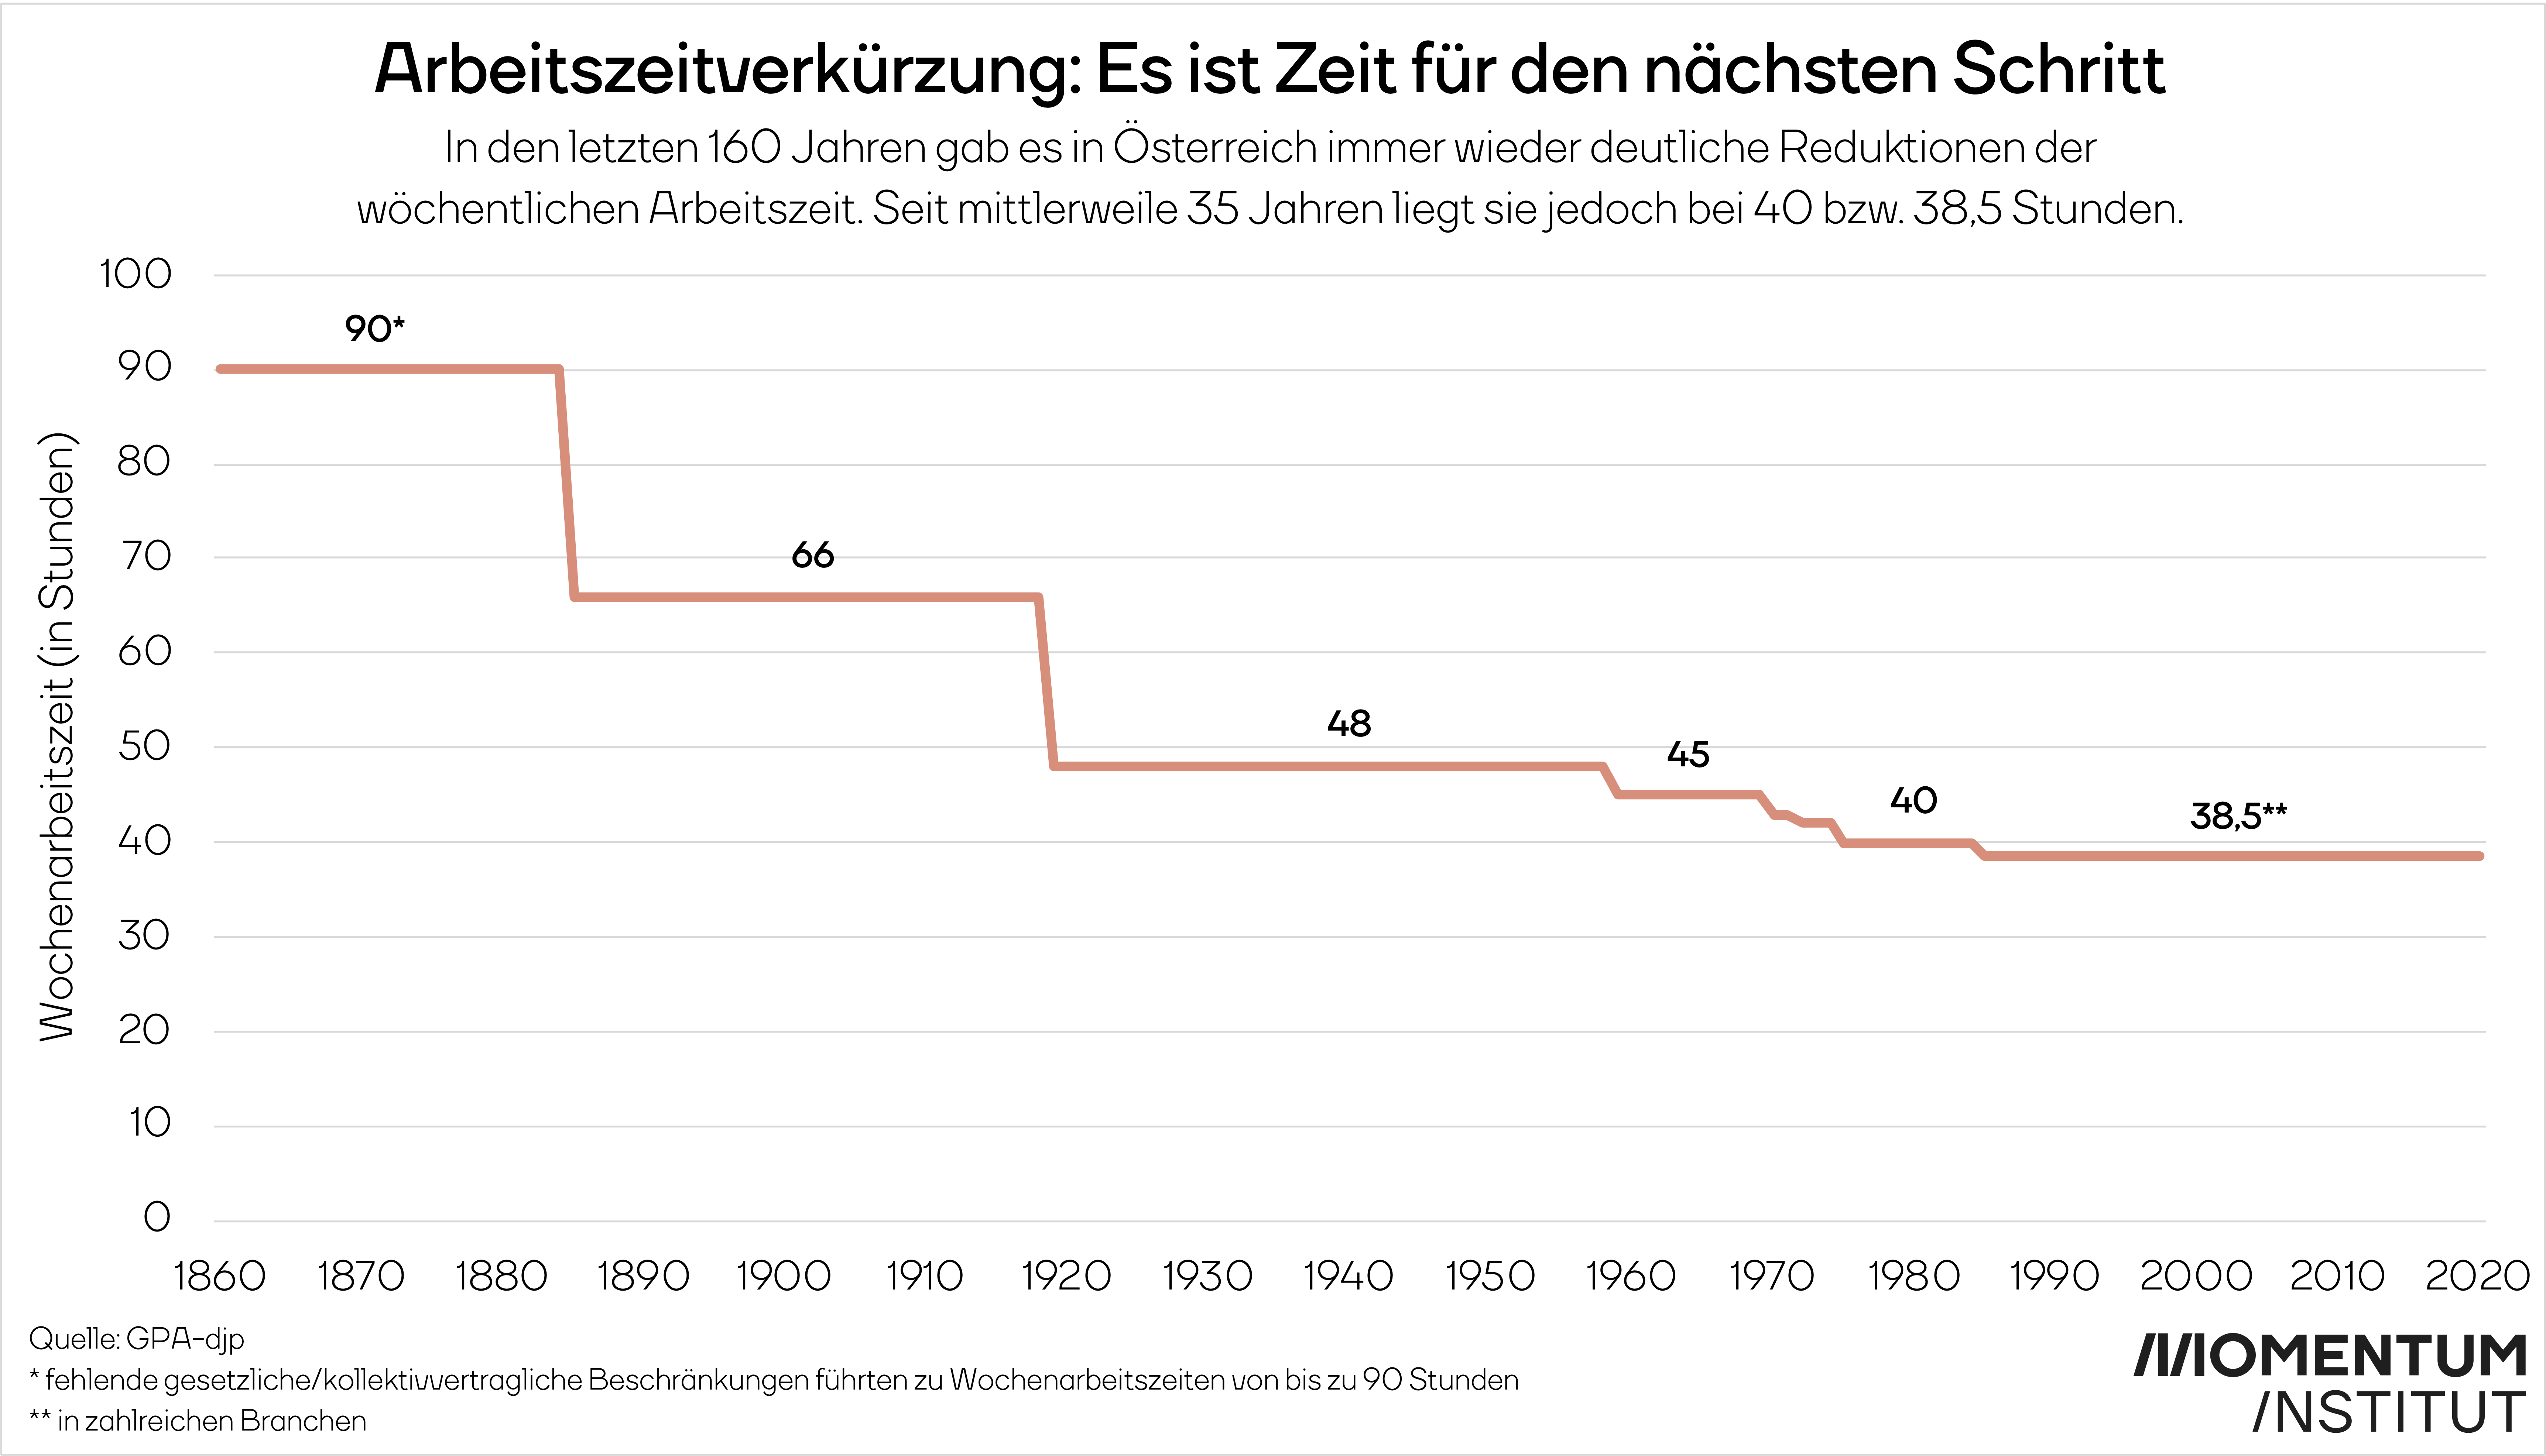 Eine Grafik, die die Schritte der Arbeitszeitverkürzung in Österreich darstellt. 